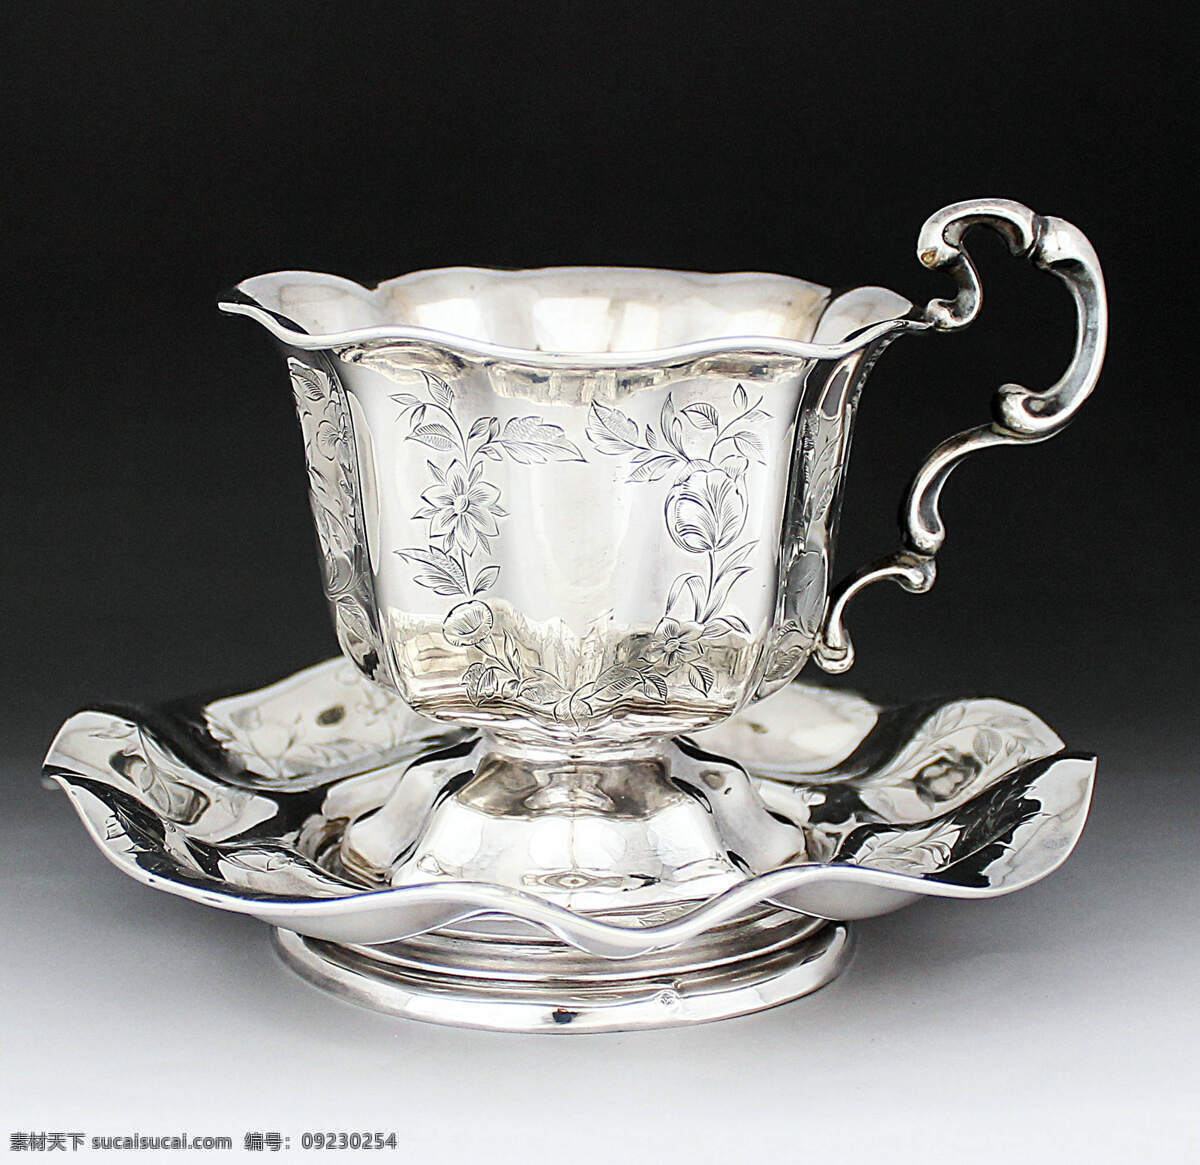 银杯 银器杯 银水杯 银餐具 银雕 银器 珍藏品 古玩 古董 工艺品 文化艺术